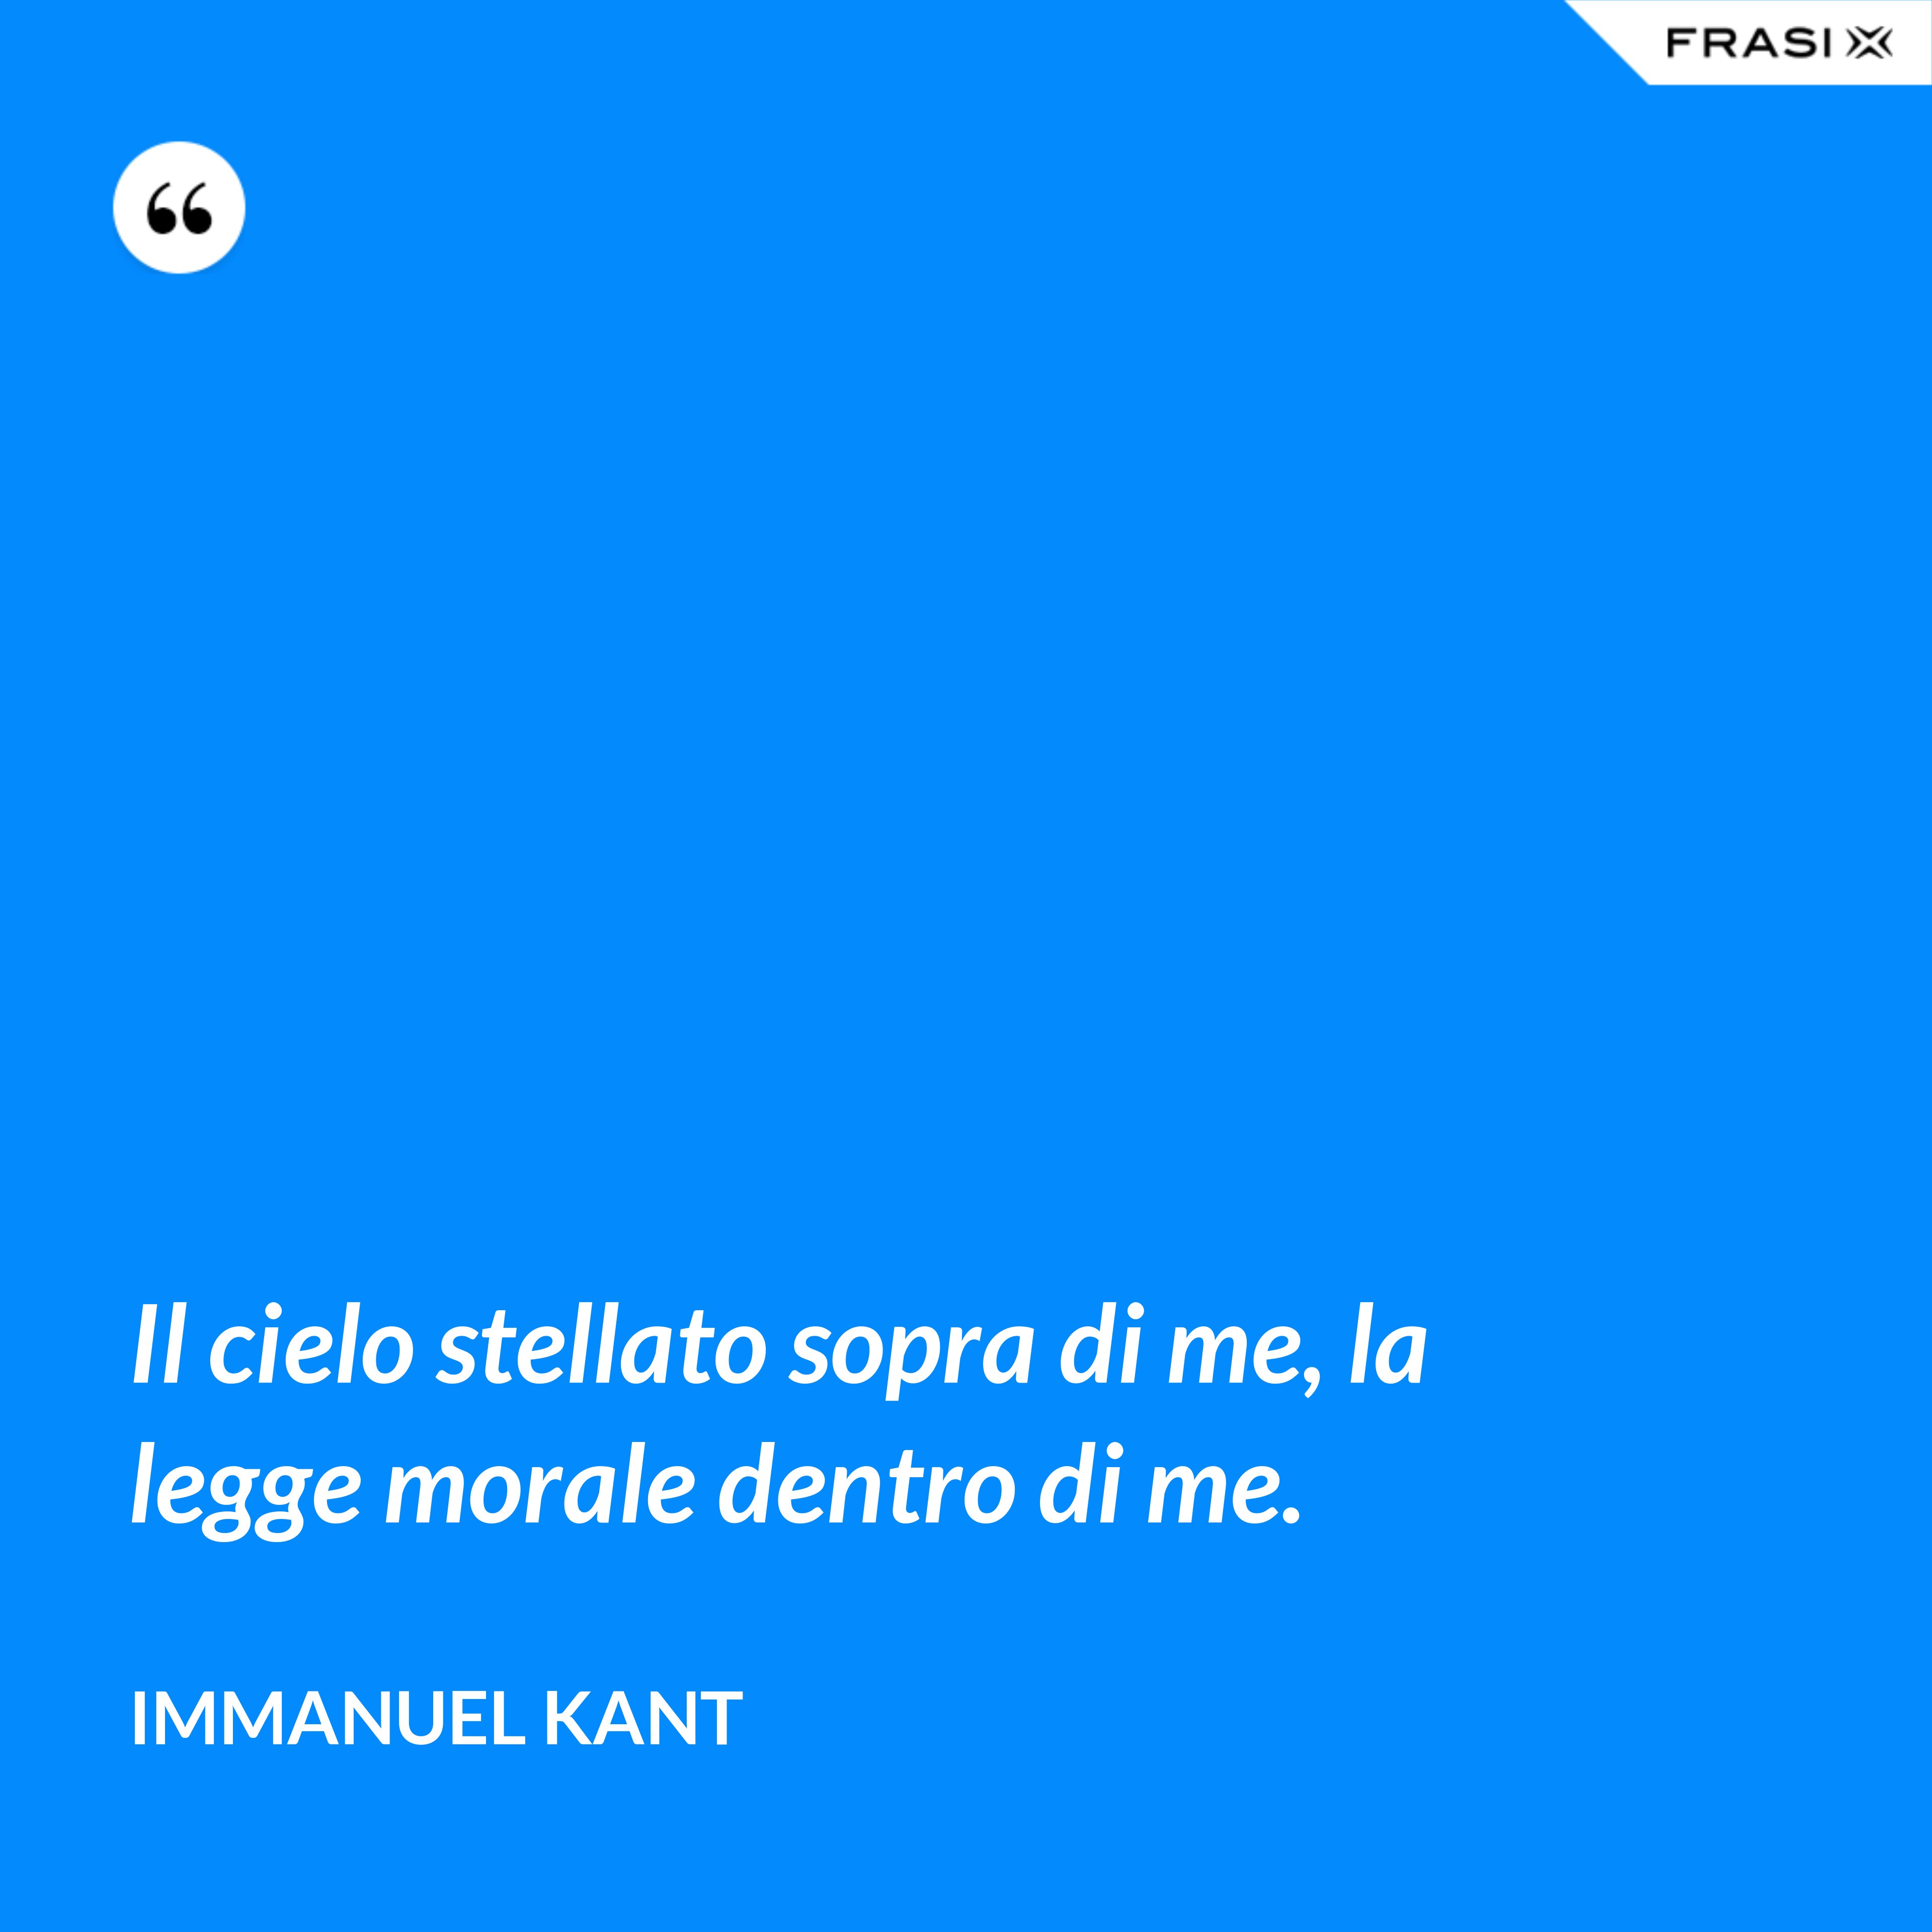 Il cielo stellato sopra di me, la legge morale dentro di me. - Immanuel Kant